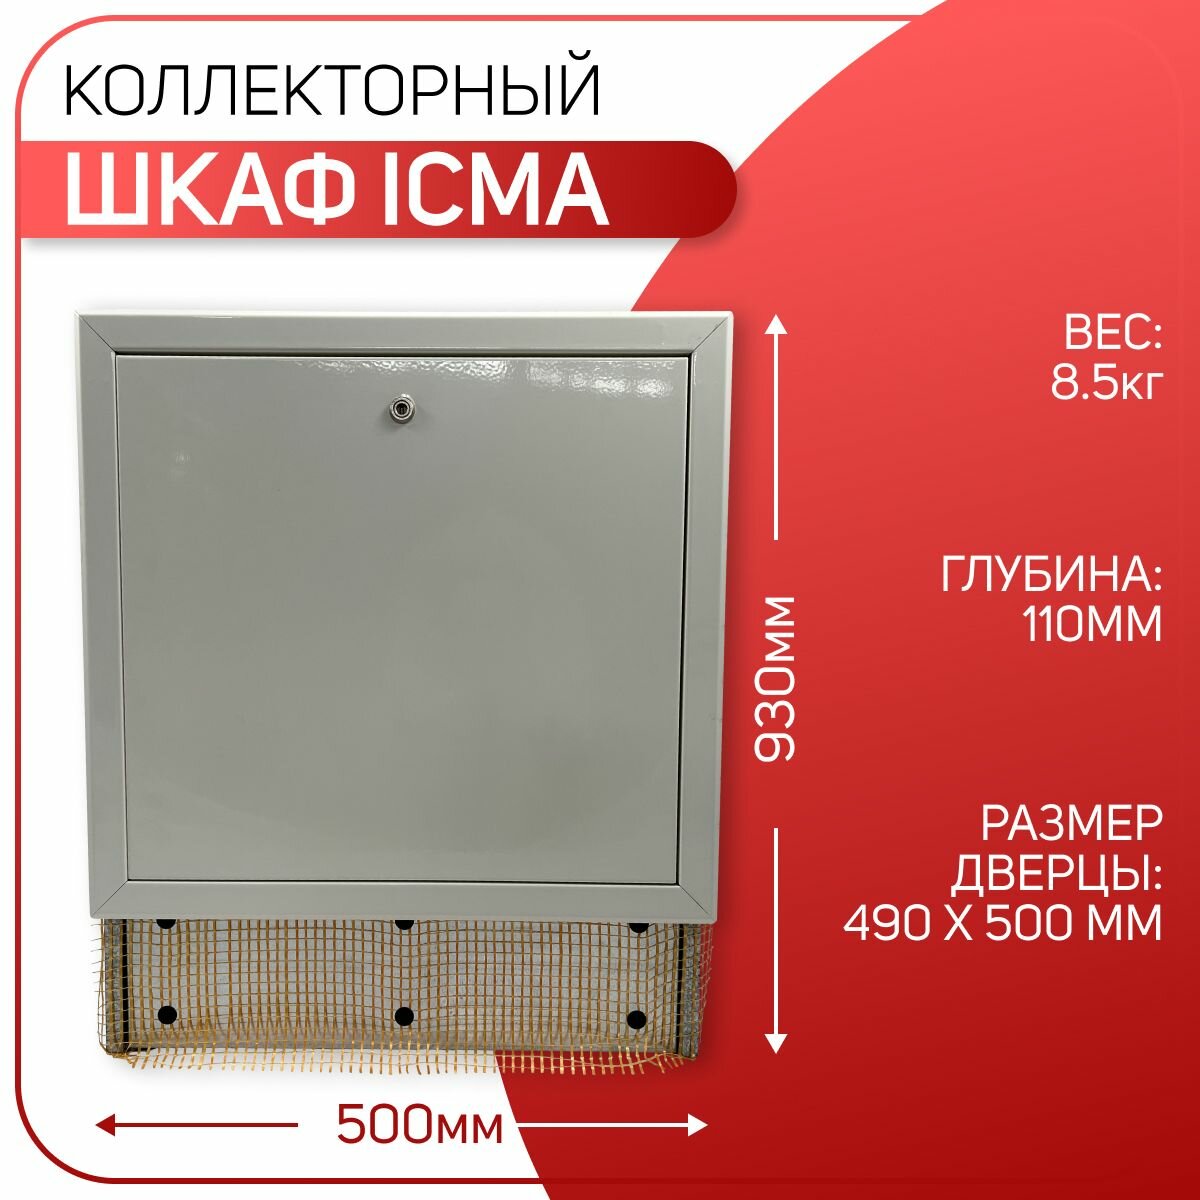 Шкаф для коллектора с замком, для систем теплого пола, регулируемый, белый, ICMA арт. 196, 630-930 х 500 х 90-110 мм